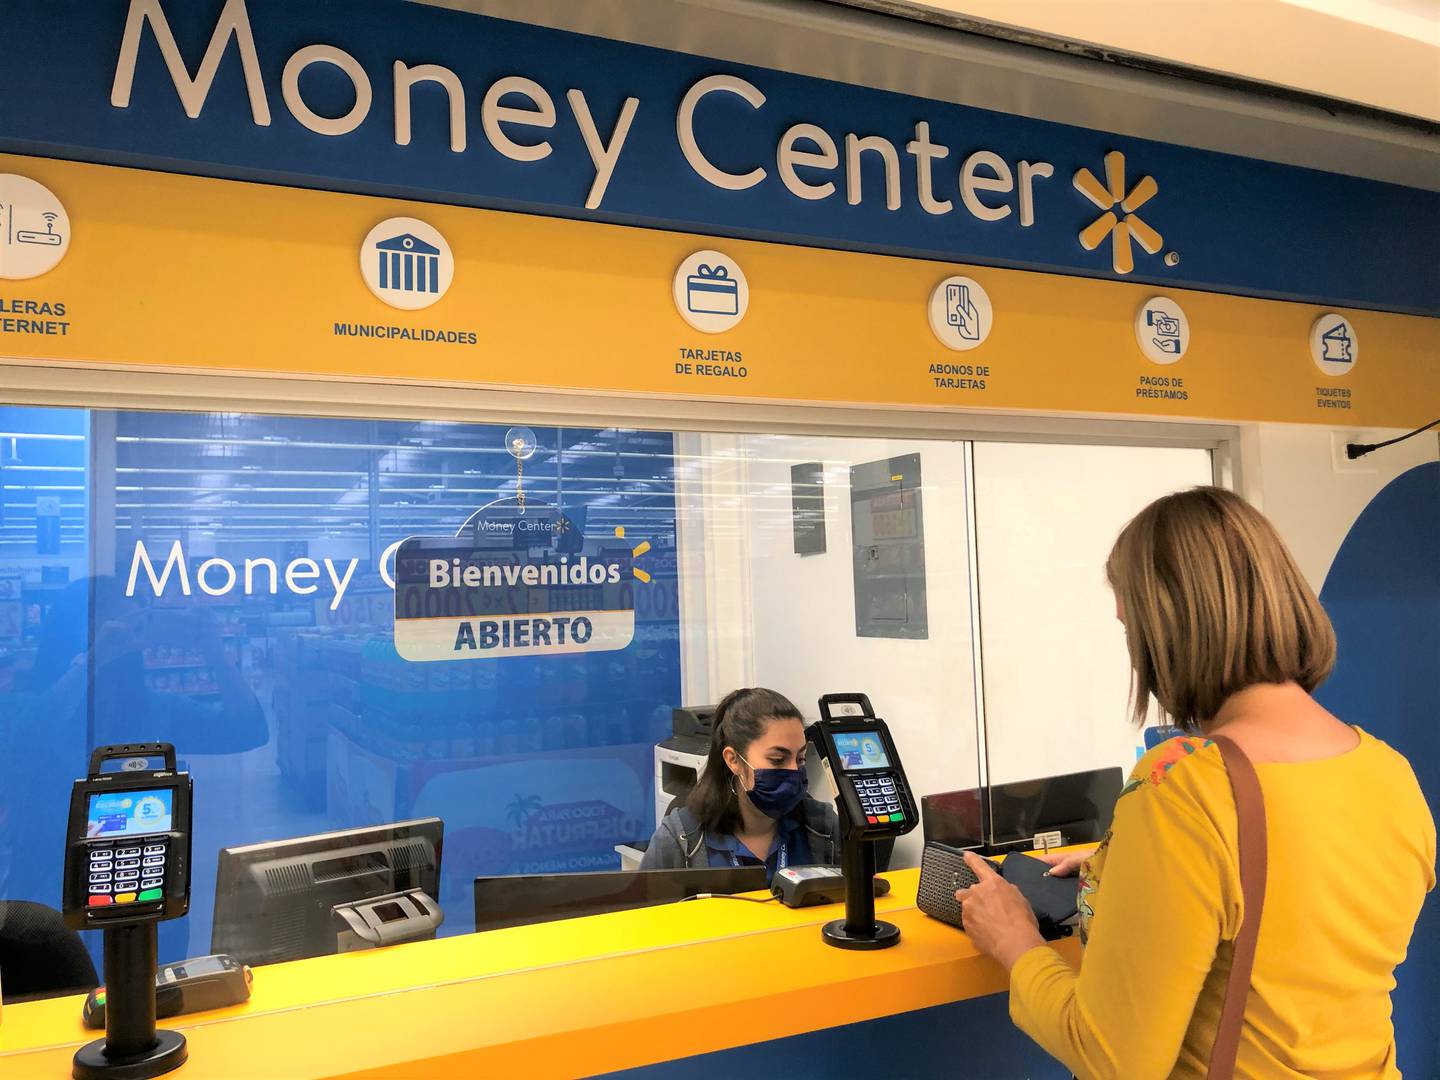 En los 61 quioscos de servicio Money Center, de la cadena Walmart, se puede enviar y recibir remesas. La compañía dijo que esto se concreta mediante un convenio con Western Union. Foto: Cortesía